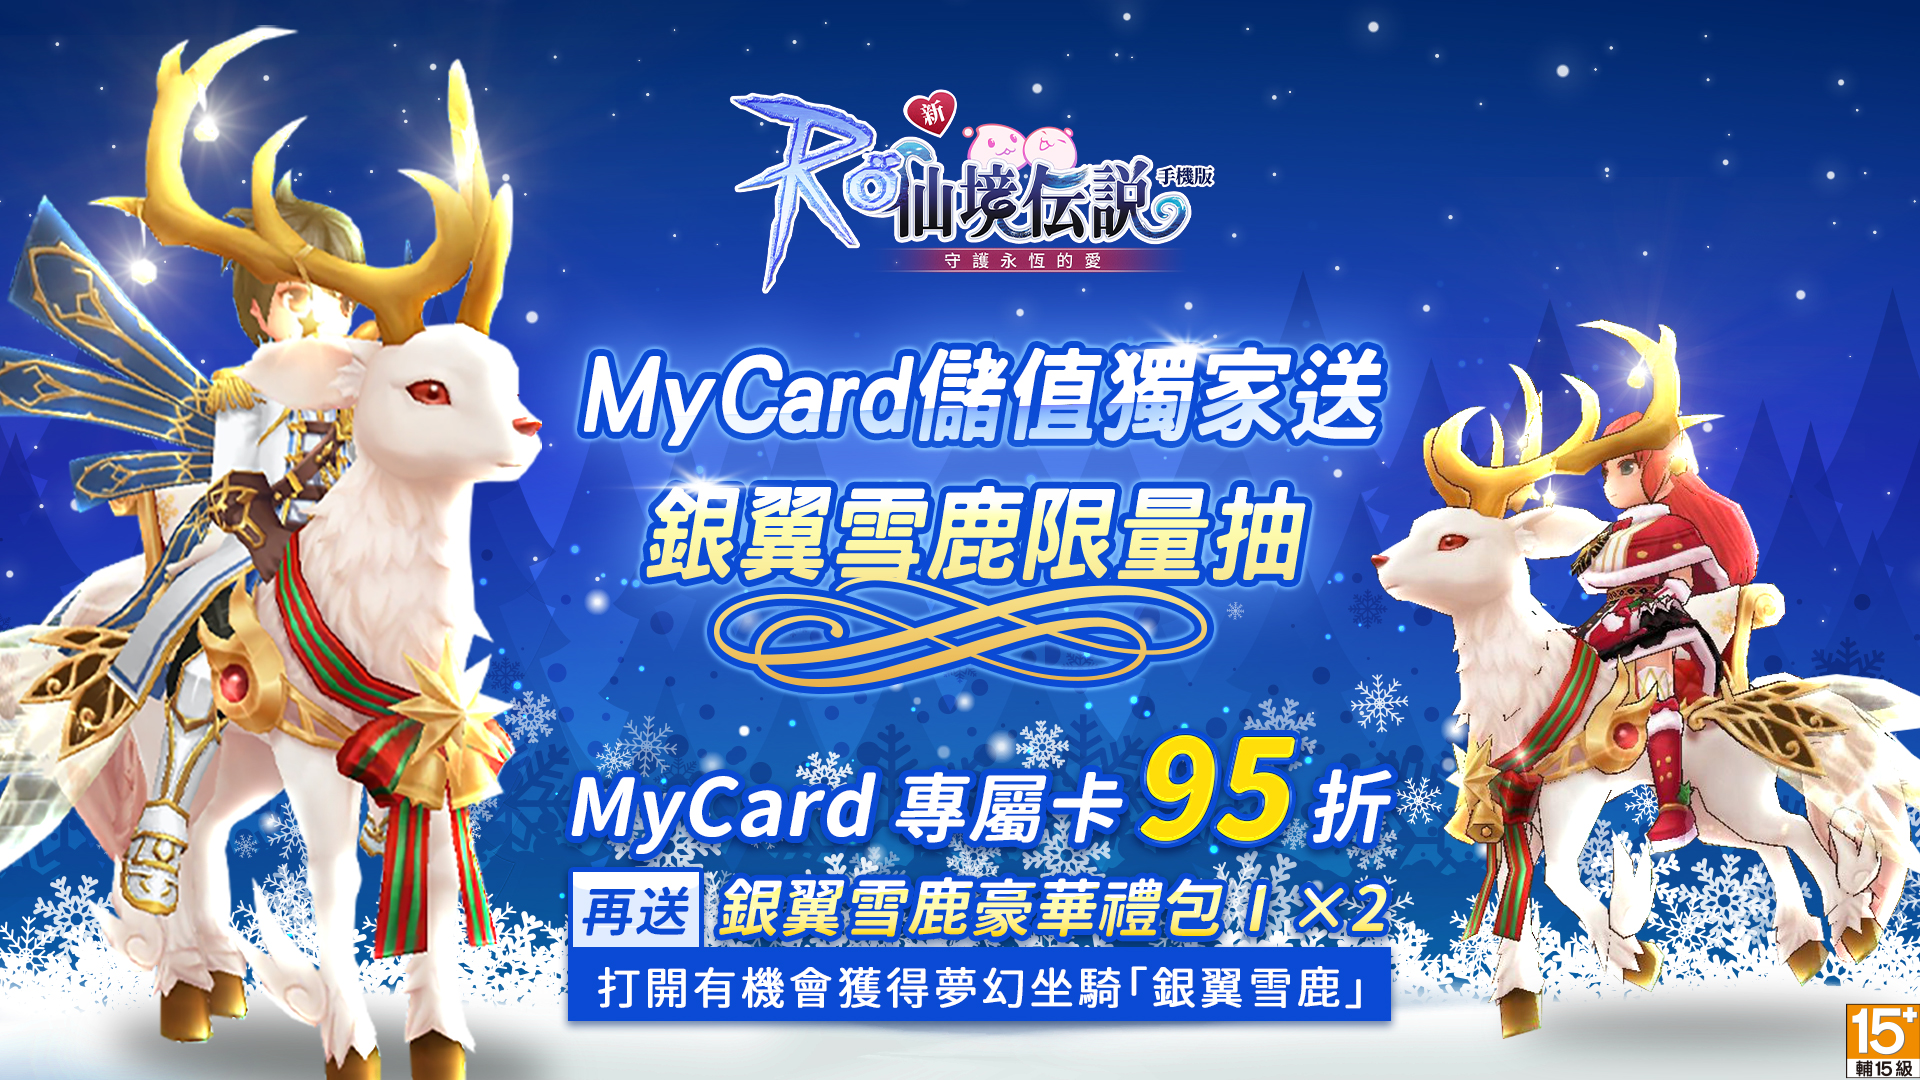 12月份Mycard專屬卡限量好康回饋活動